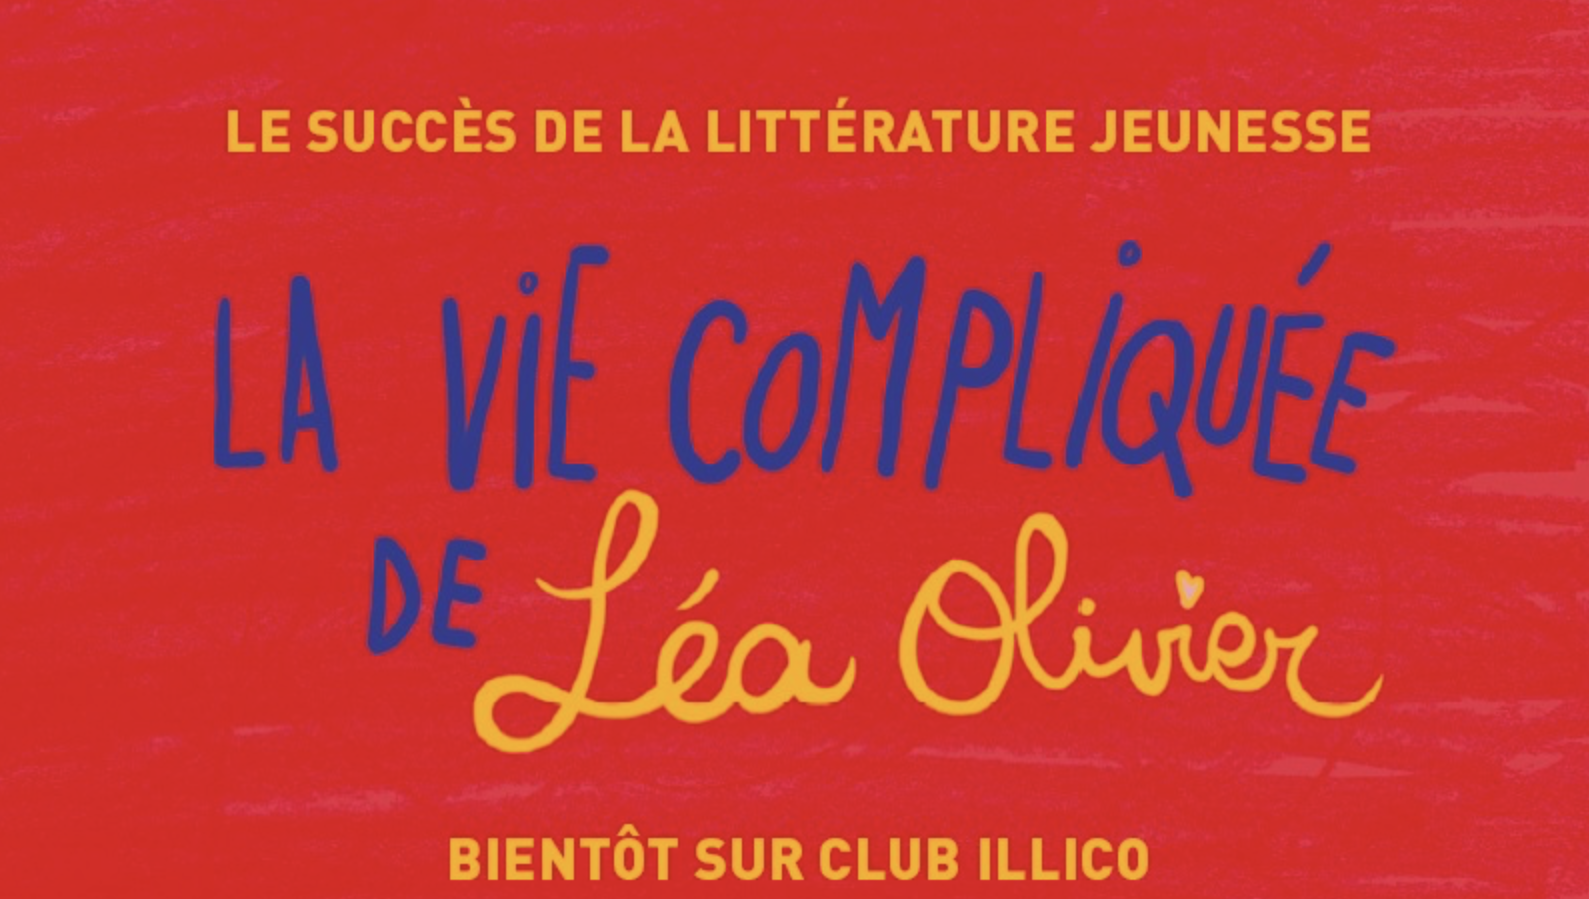 Le succès de la littérature jeunesse La vie compliquée de Léa Olivier bientôt sur Club illico